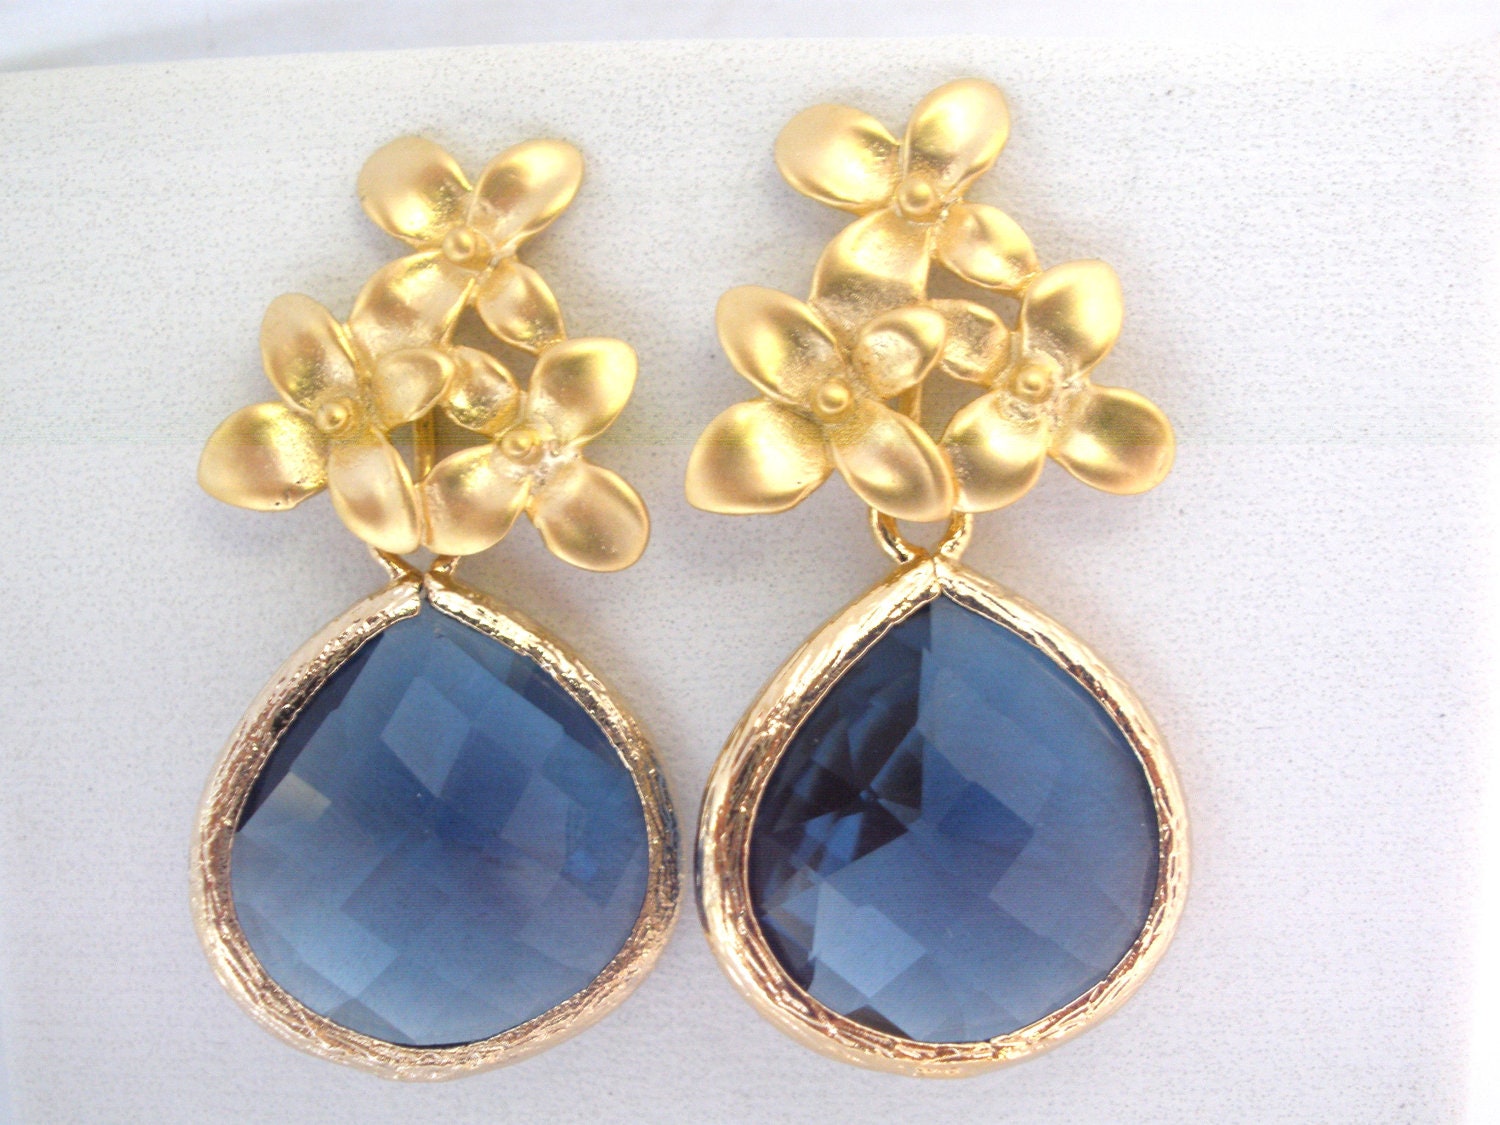 Blue Earrings, Glass Earrings, Flower Earrings, Montana Blue, Gold Earrings, Bridesmaid Earrings, Bridal Earrings Jewelry, Bridesmaid Gifts